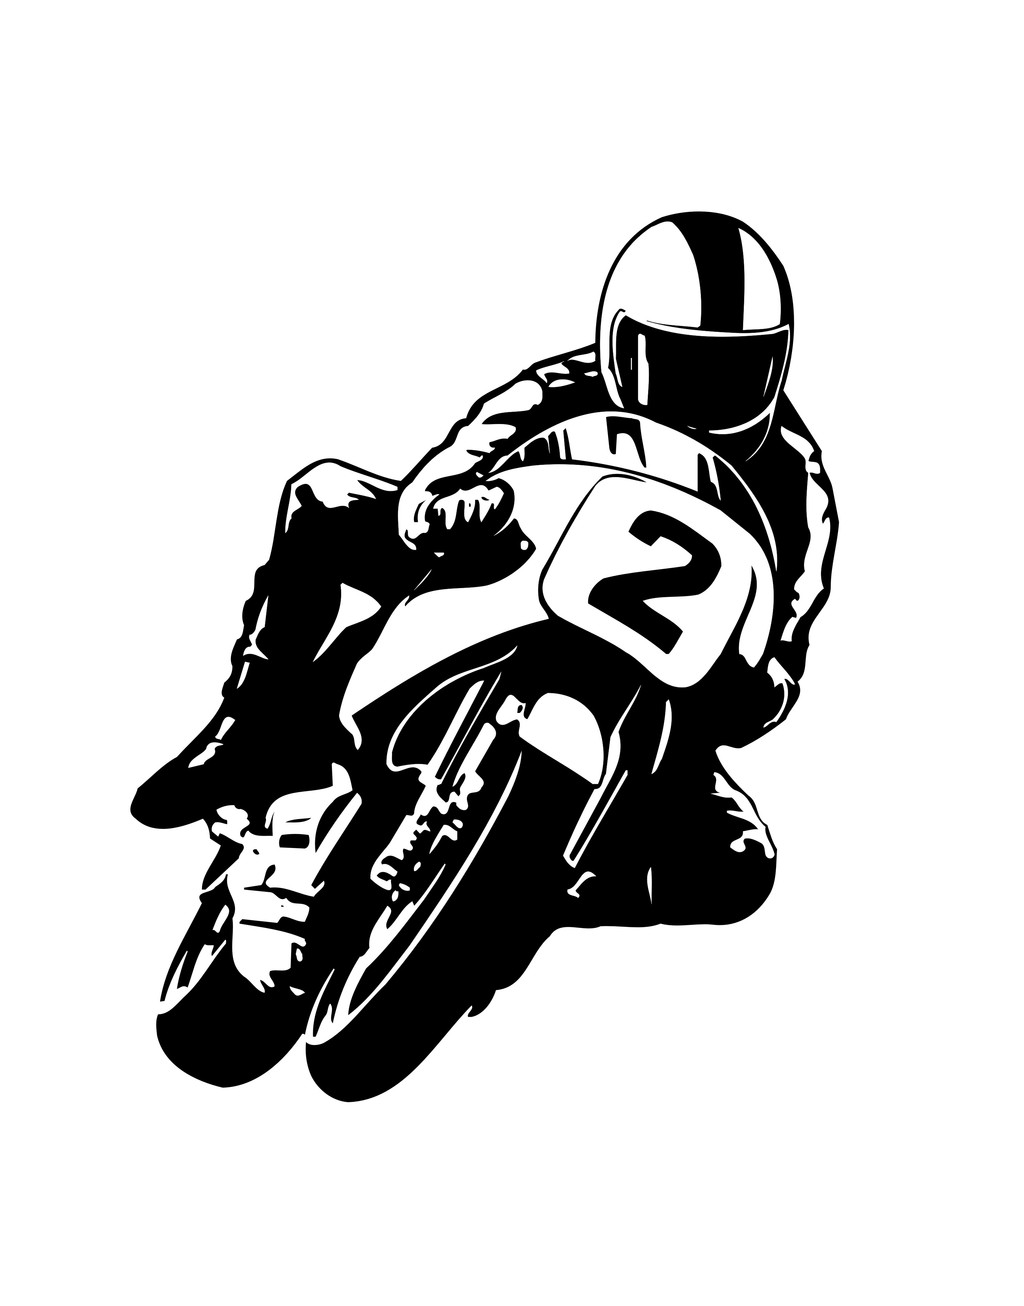 骑摩托车运动员黑白简笔插画图片设计素材_高